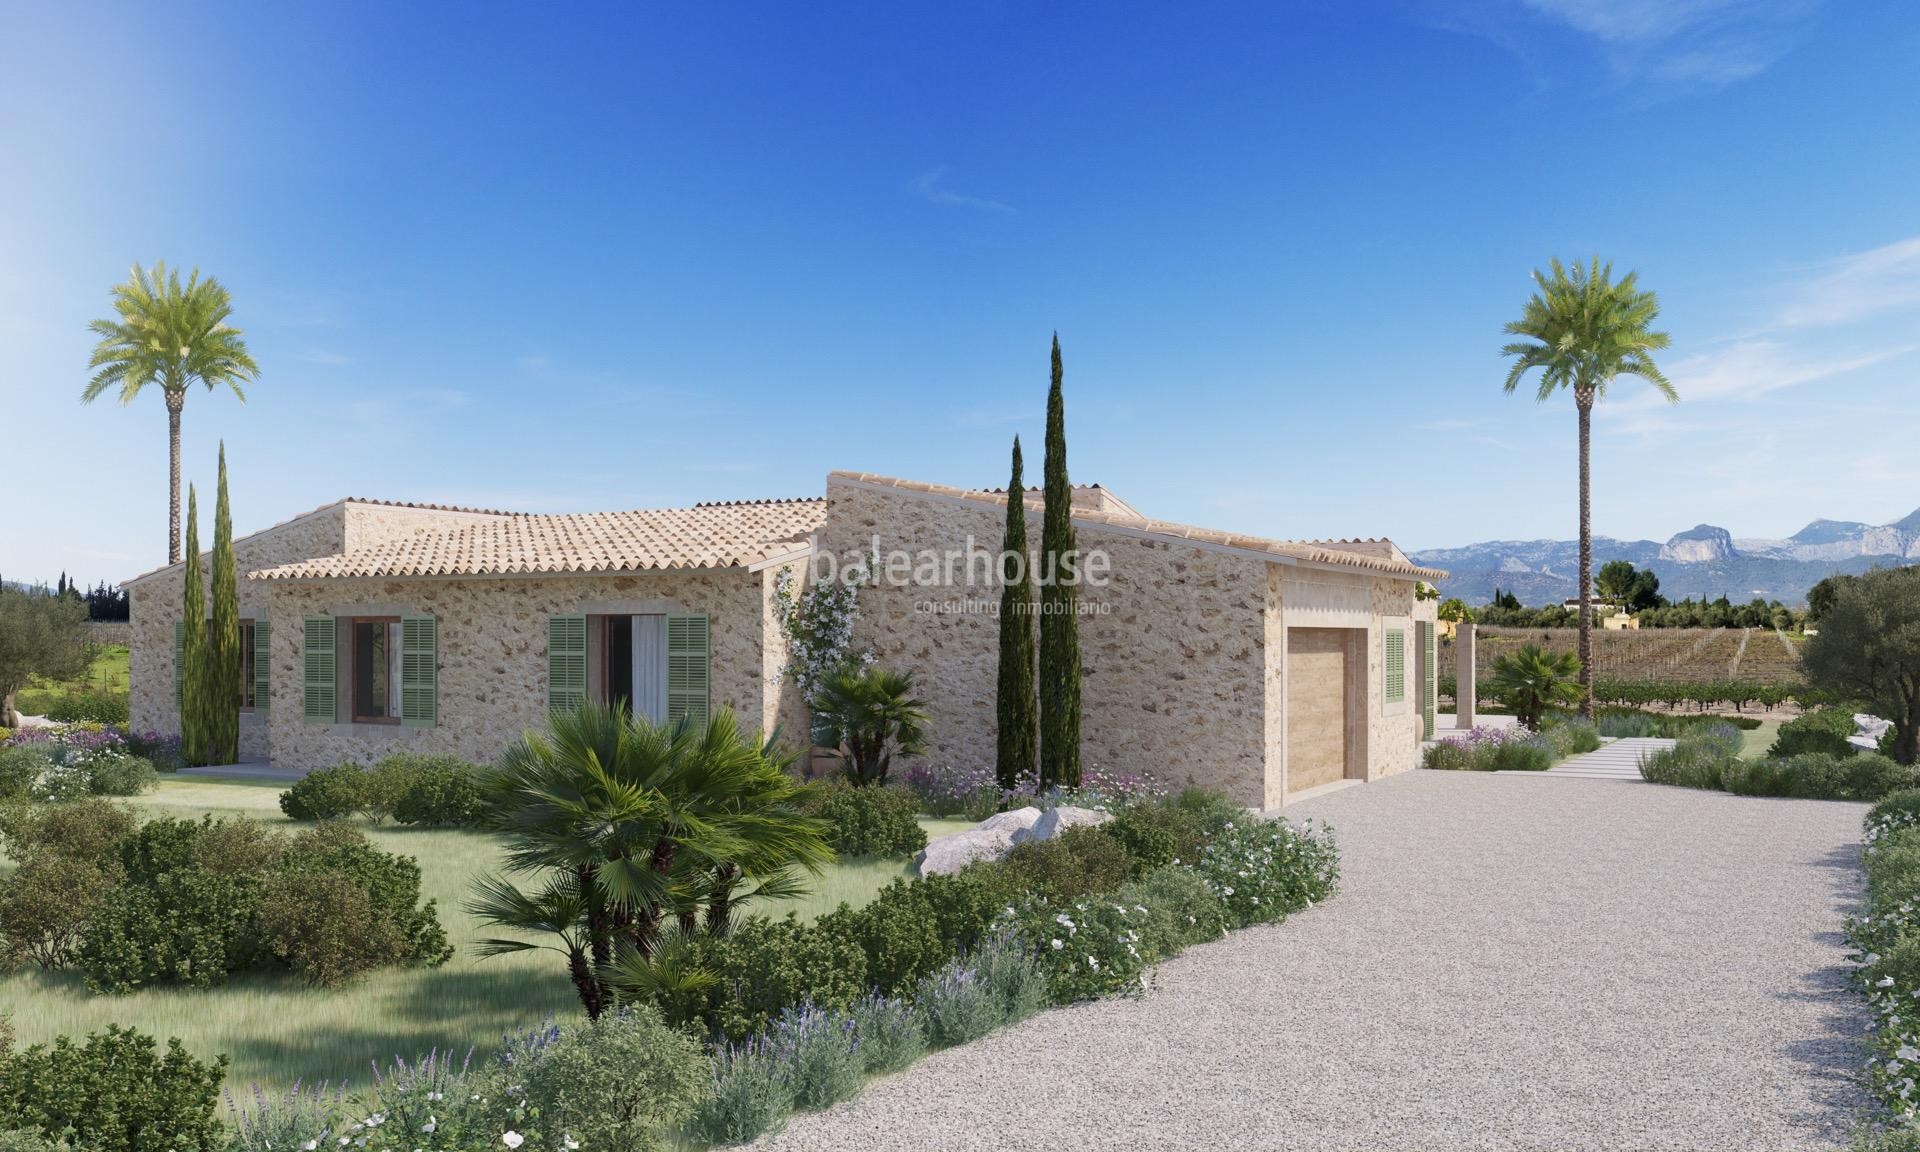 Wunderschöne neu gebaute Finca in einem Paradies zwischen Weinbergen im Landesinneren von Mallorca